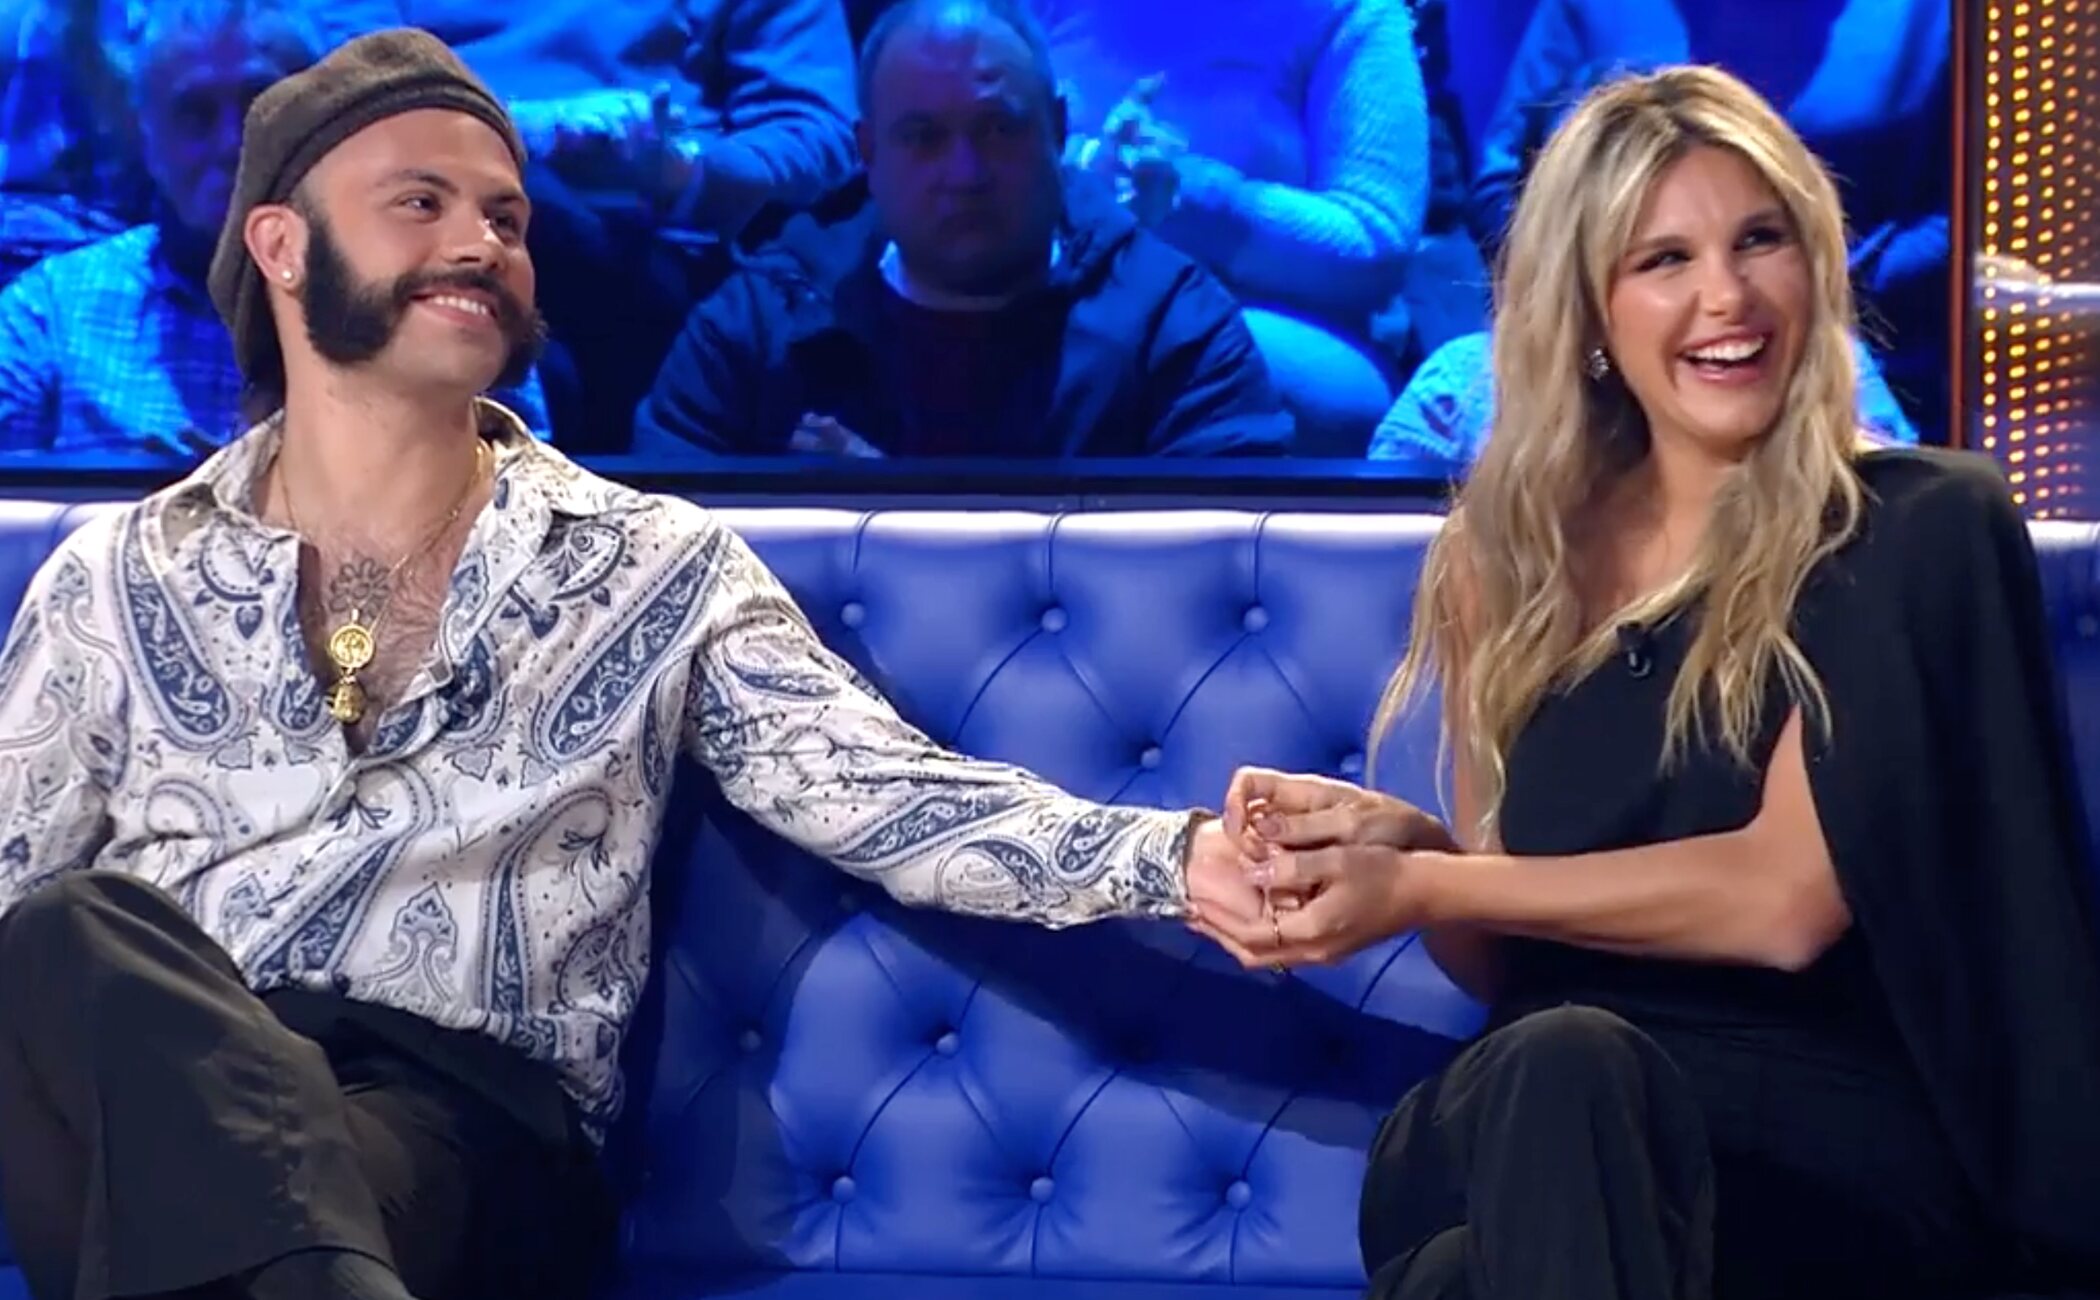 Finito e Ivana Icardi confirman su romance tras 'GH DÚO' con un beso en plató: "La primera noche no dormimos"